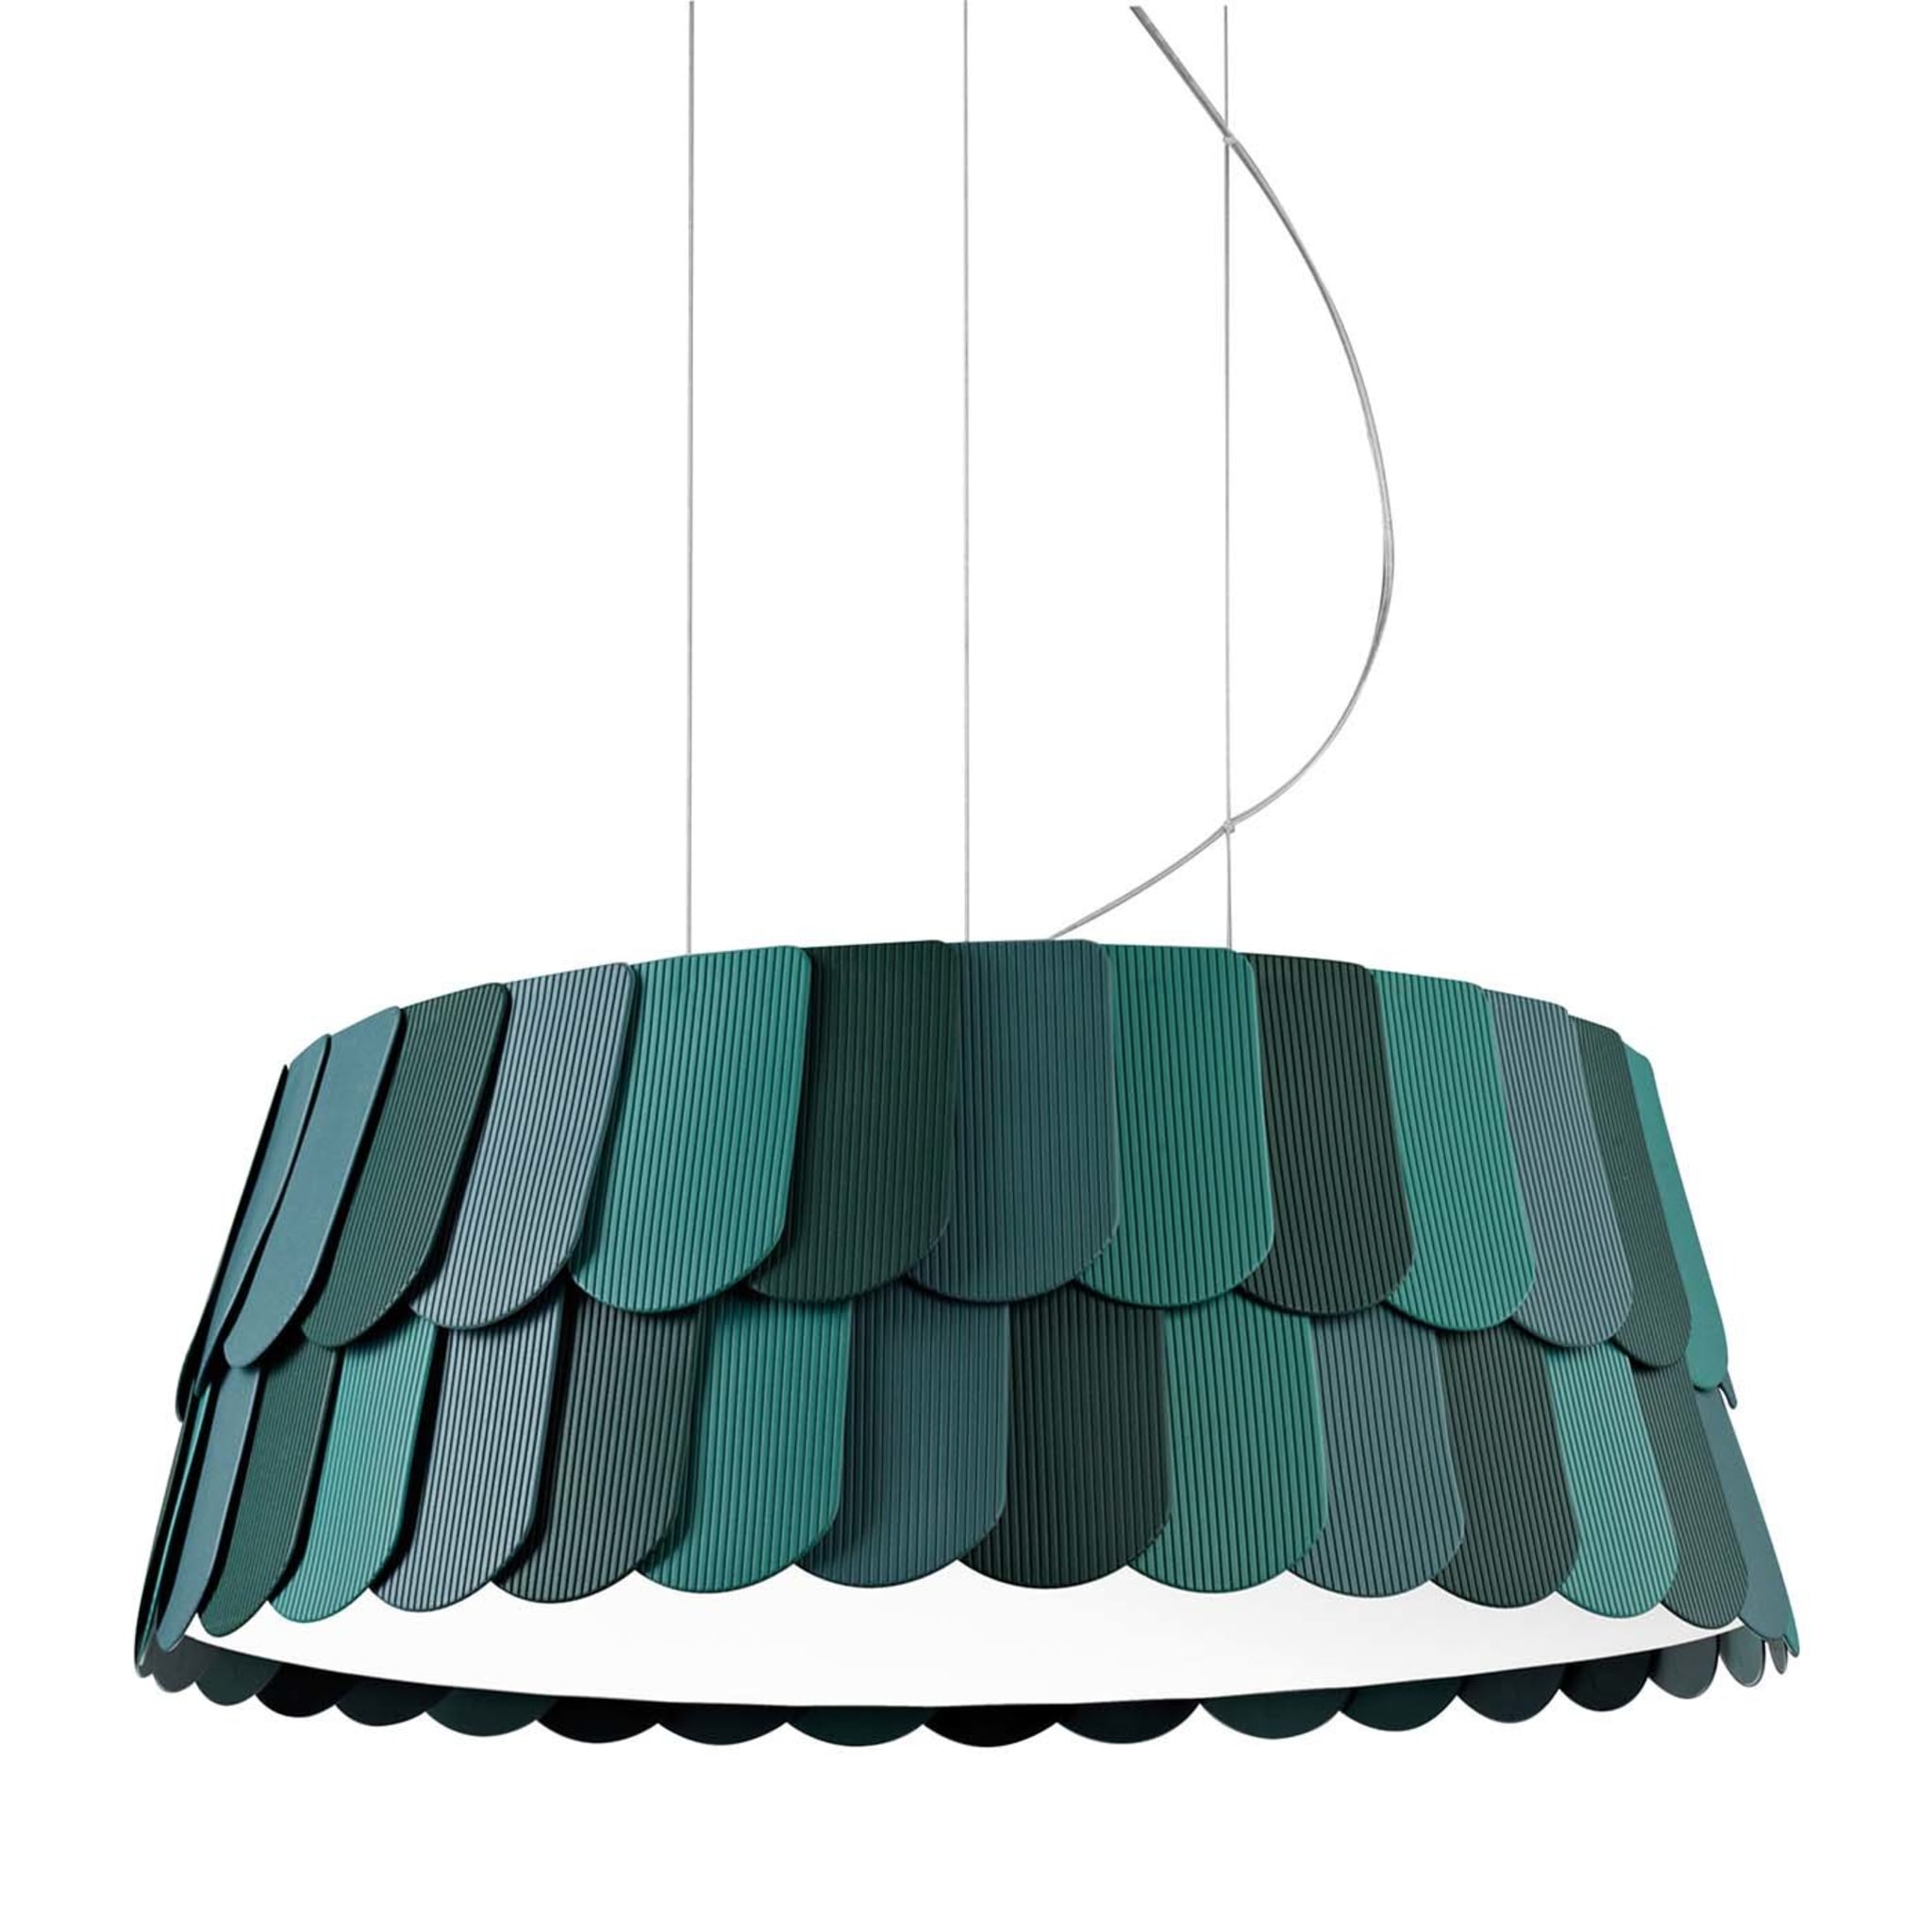 Roofer Green Pendant Lamp by Benjamin Hubert - Main view